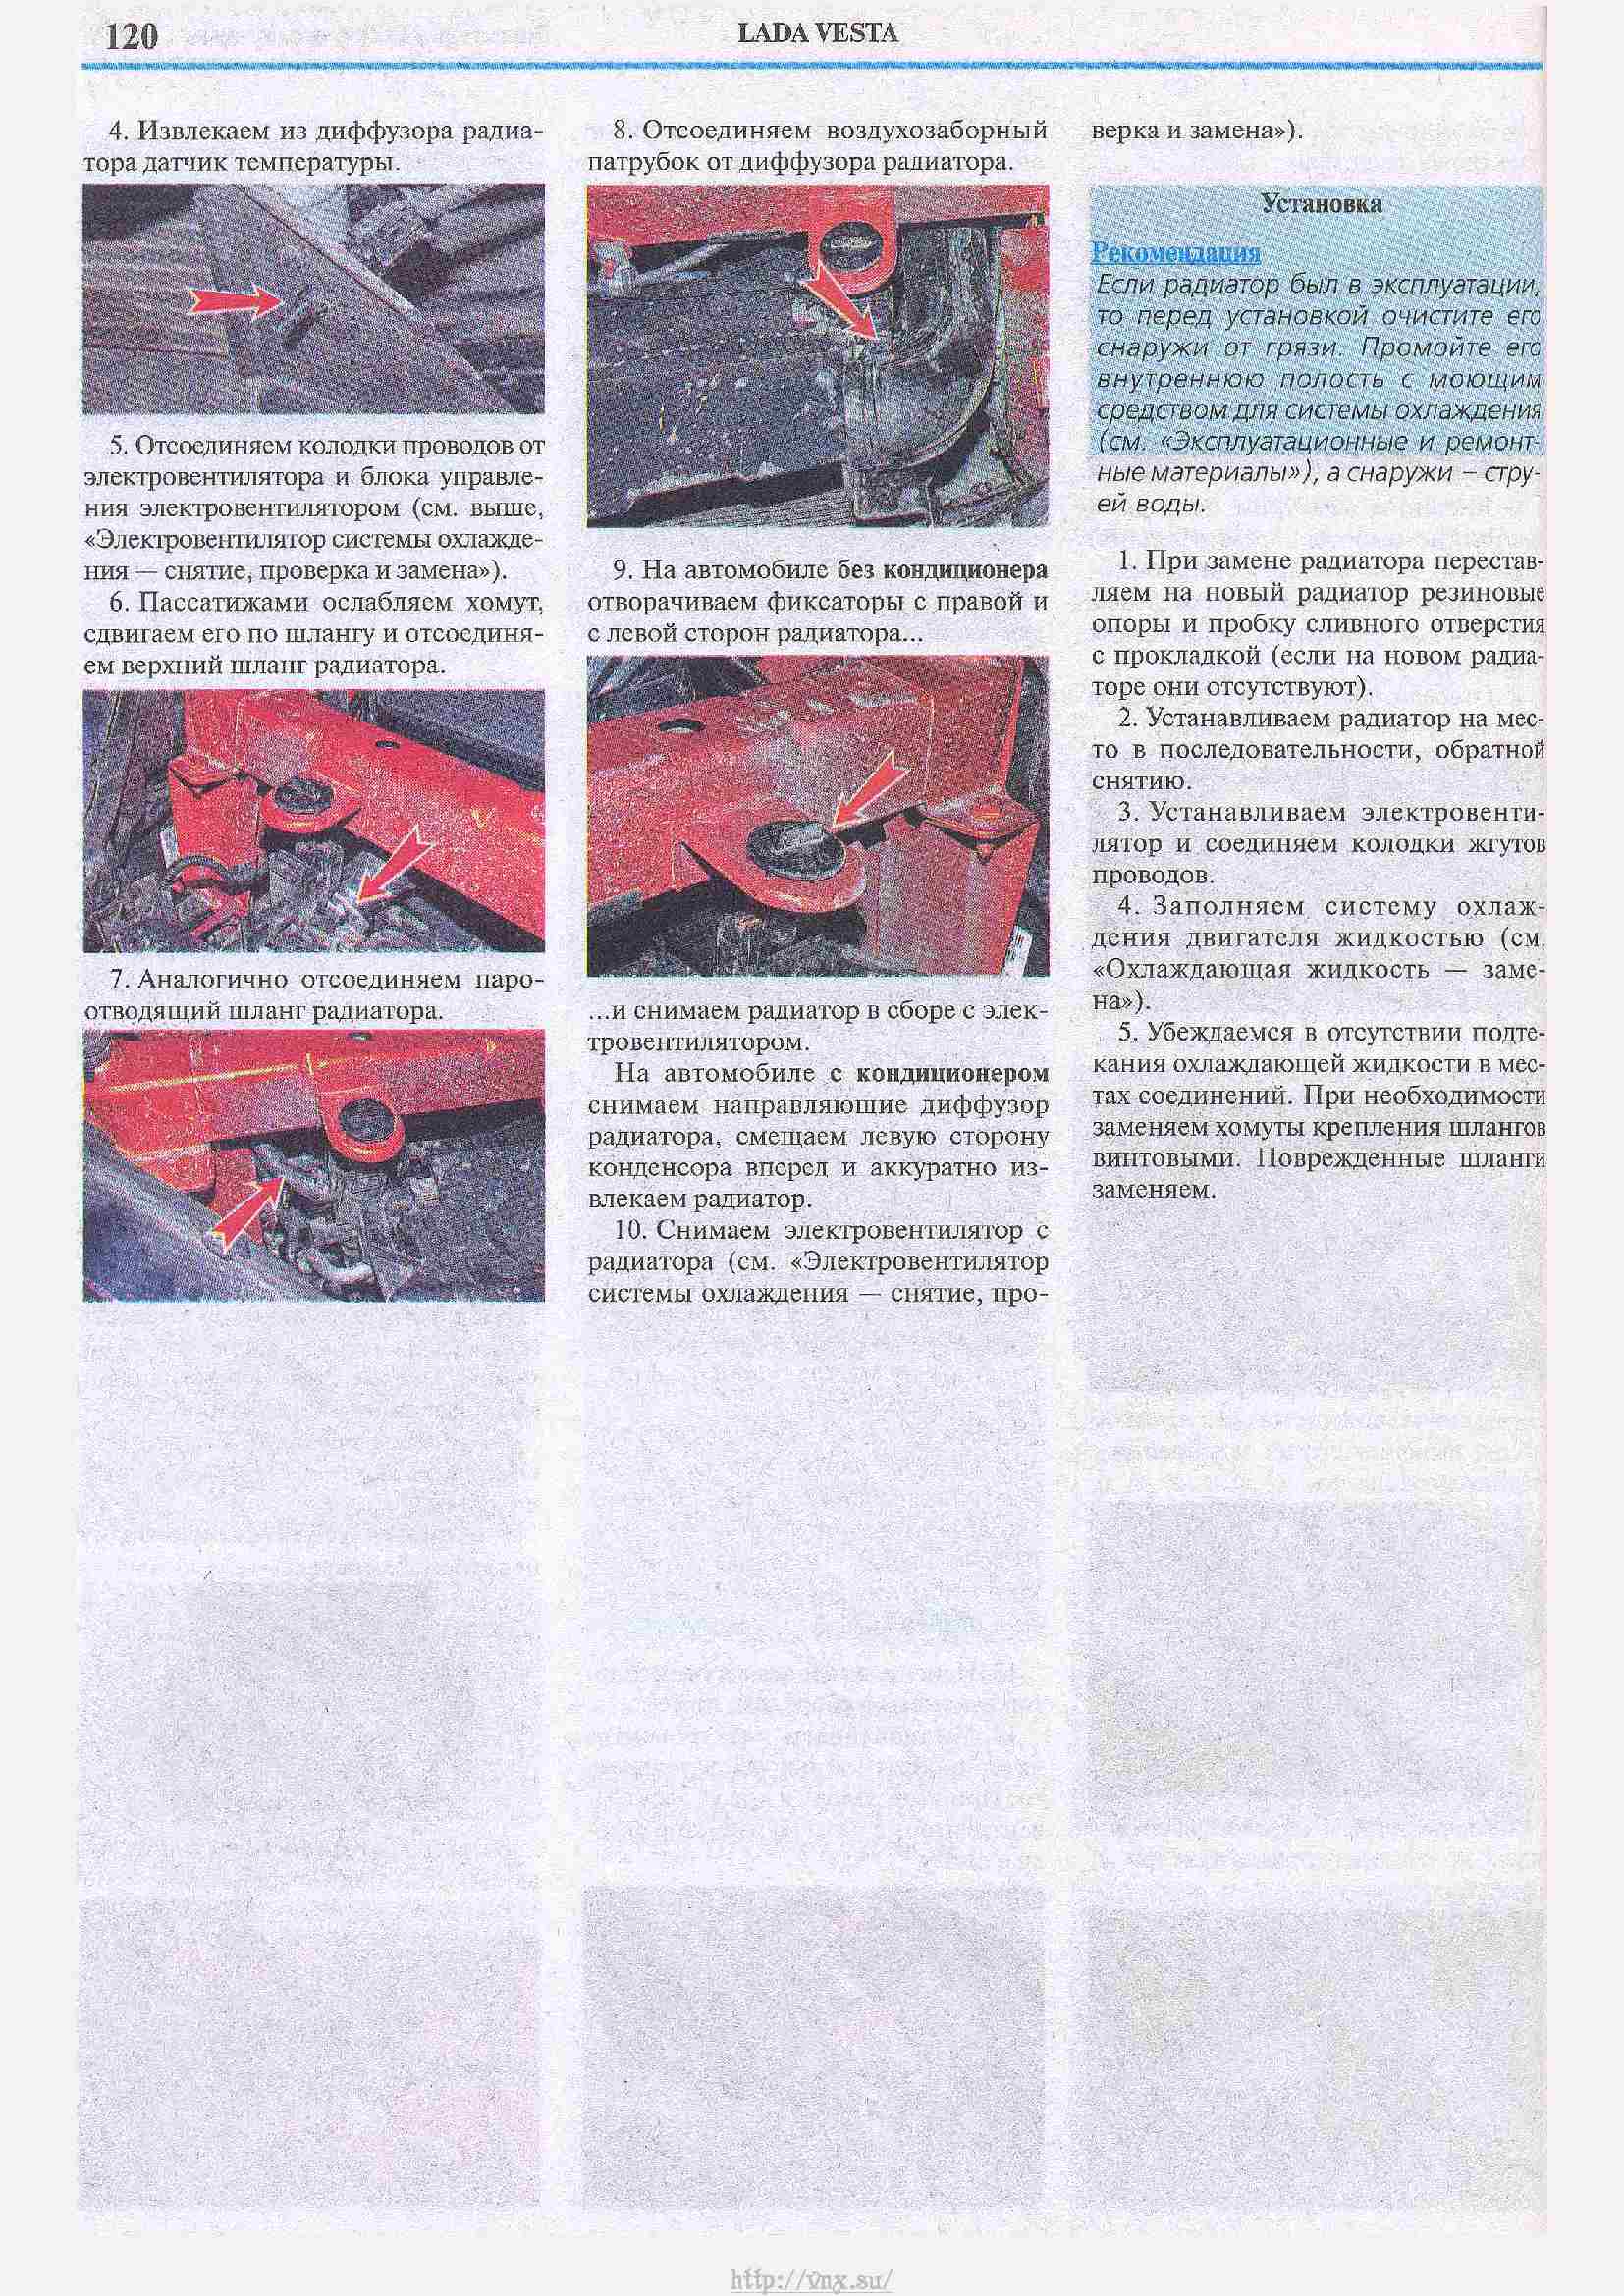 Обзор книги по эксплуатации и ремонту lada vesta